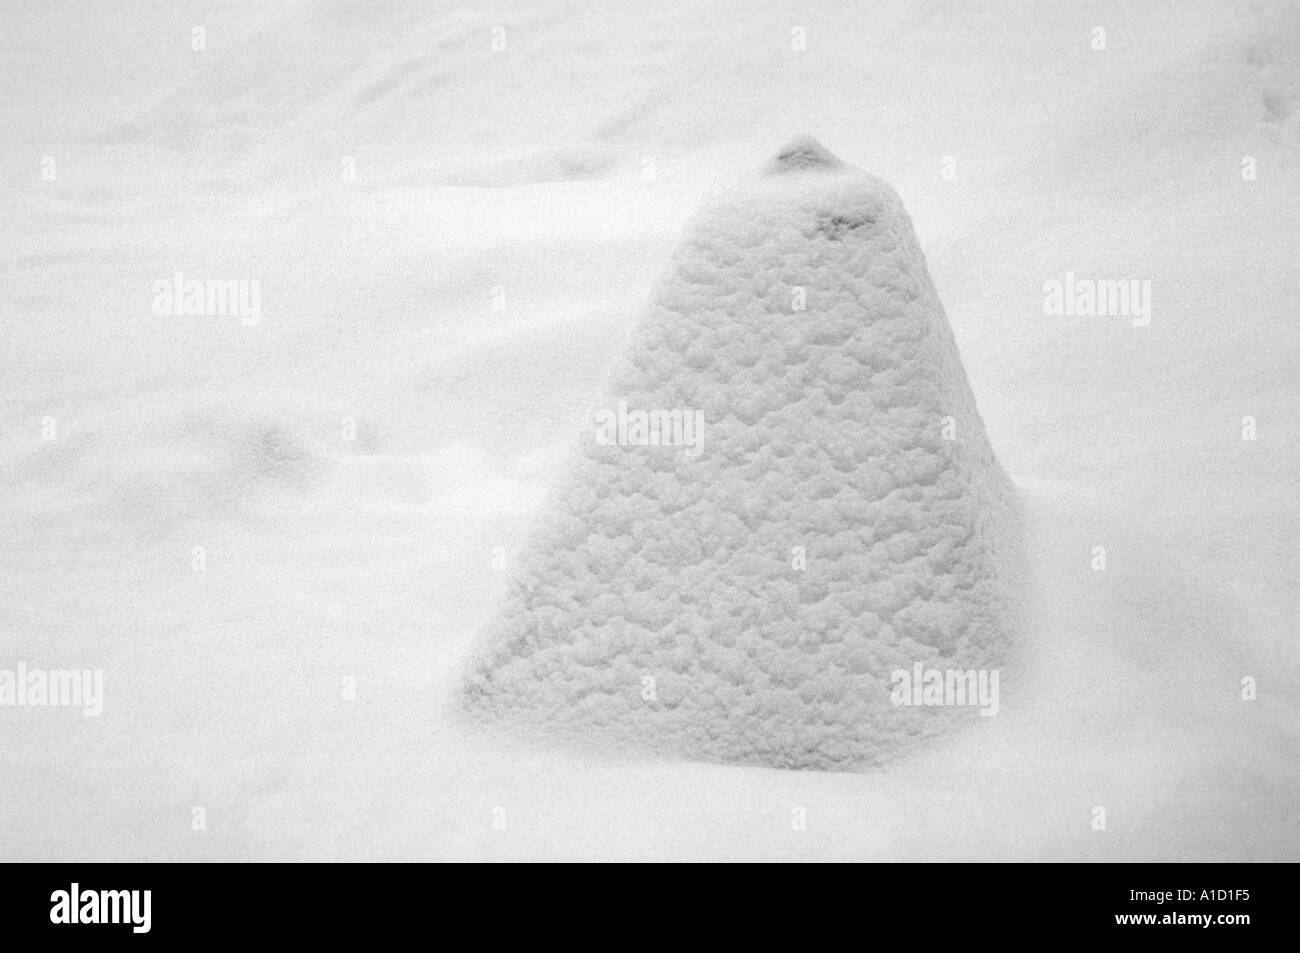 Neige fraîche couvre un poids en béton en forme de pyramide 2 pieds de hauteur dans le comté de Meath Irlande Navan Banque D'Images